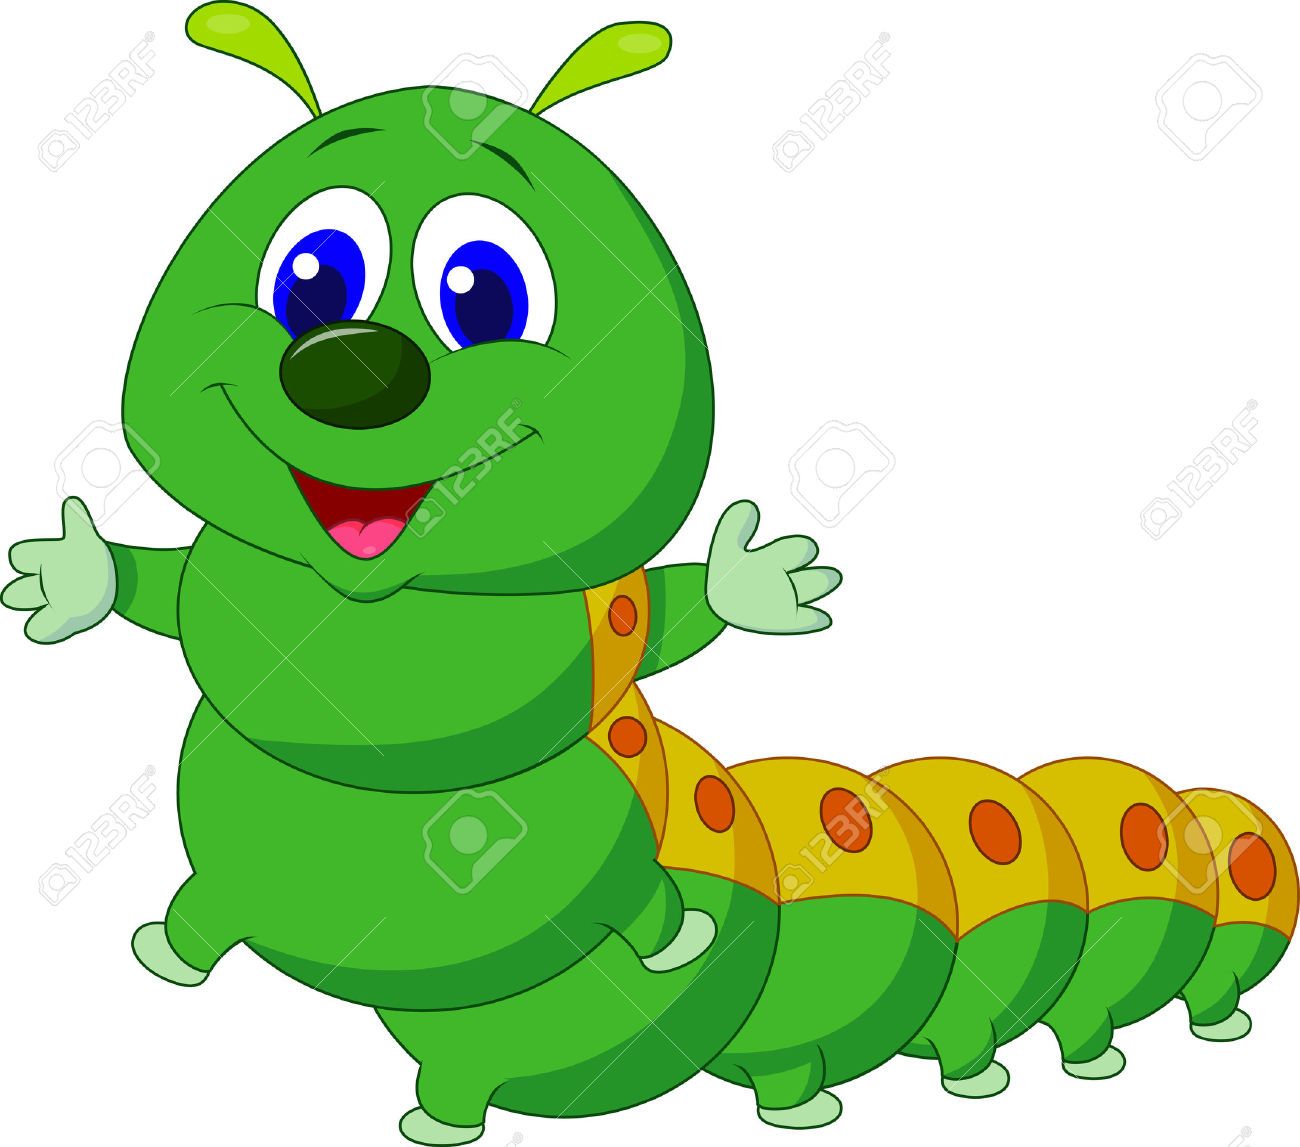 Caterpillar Cartoon Stock Photos, Pictures, Royalty Free